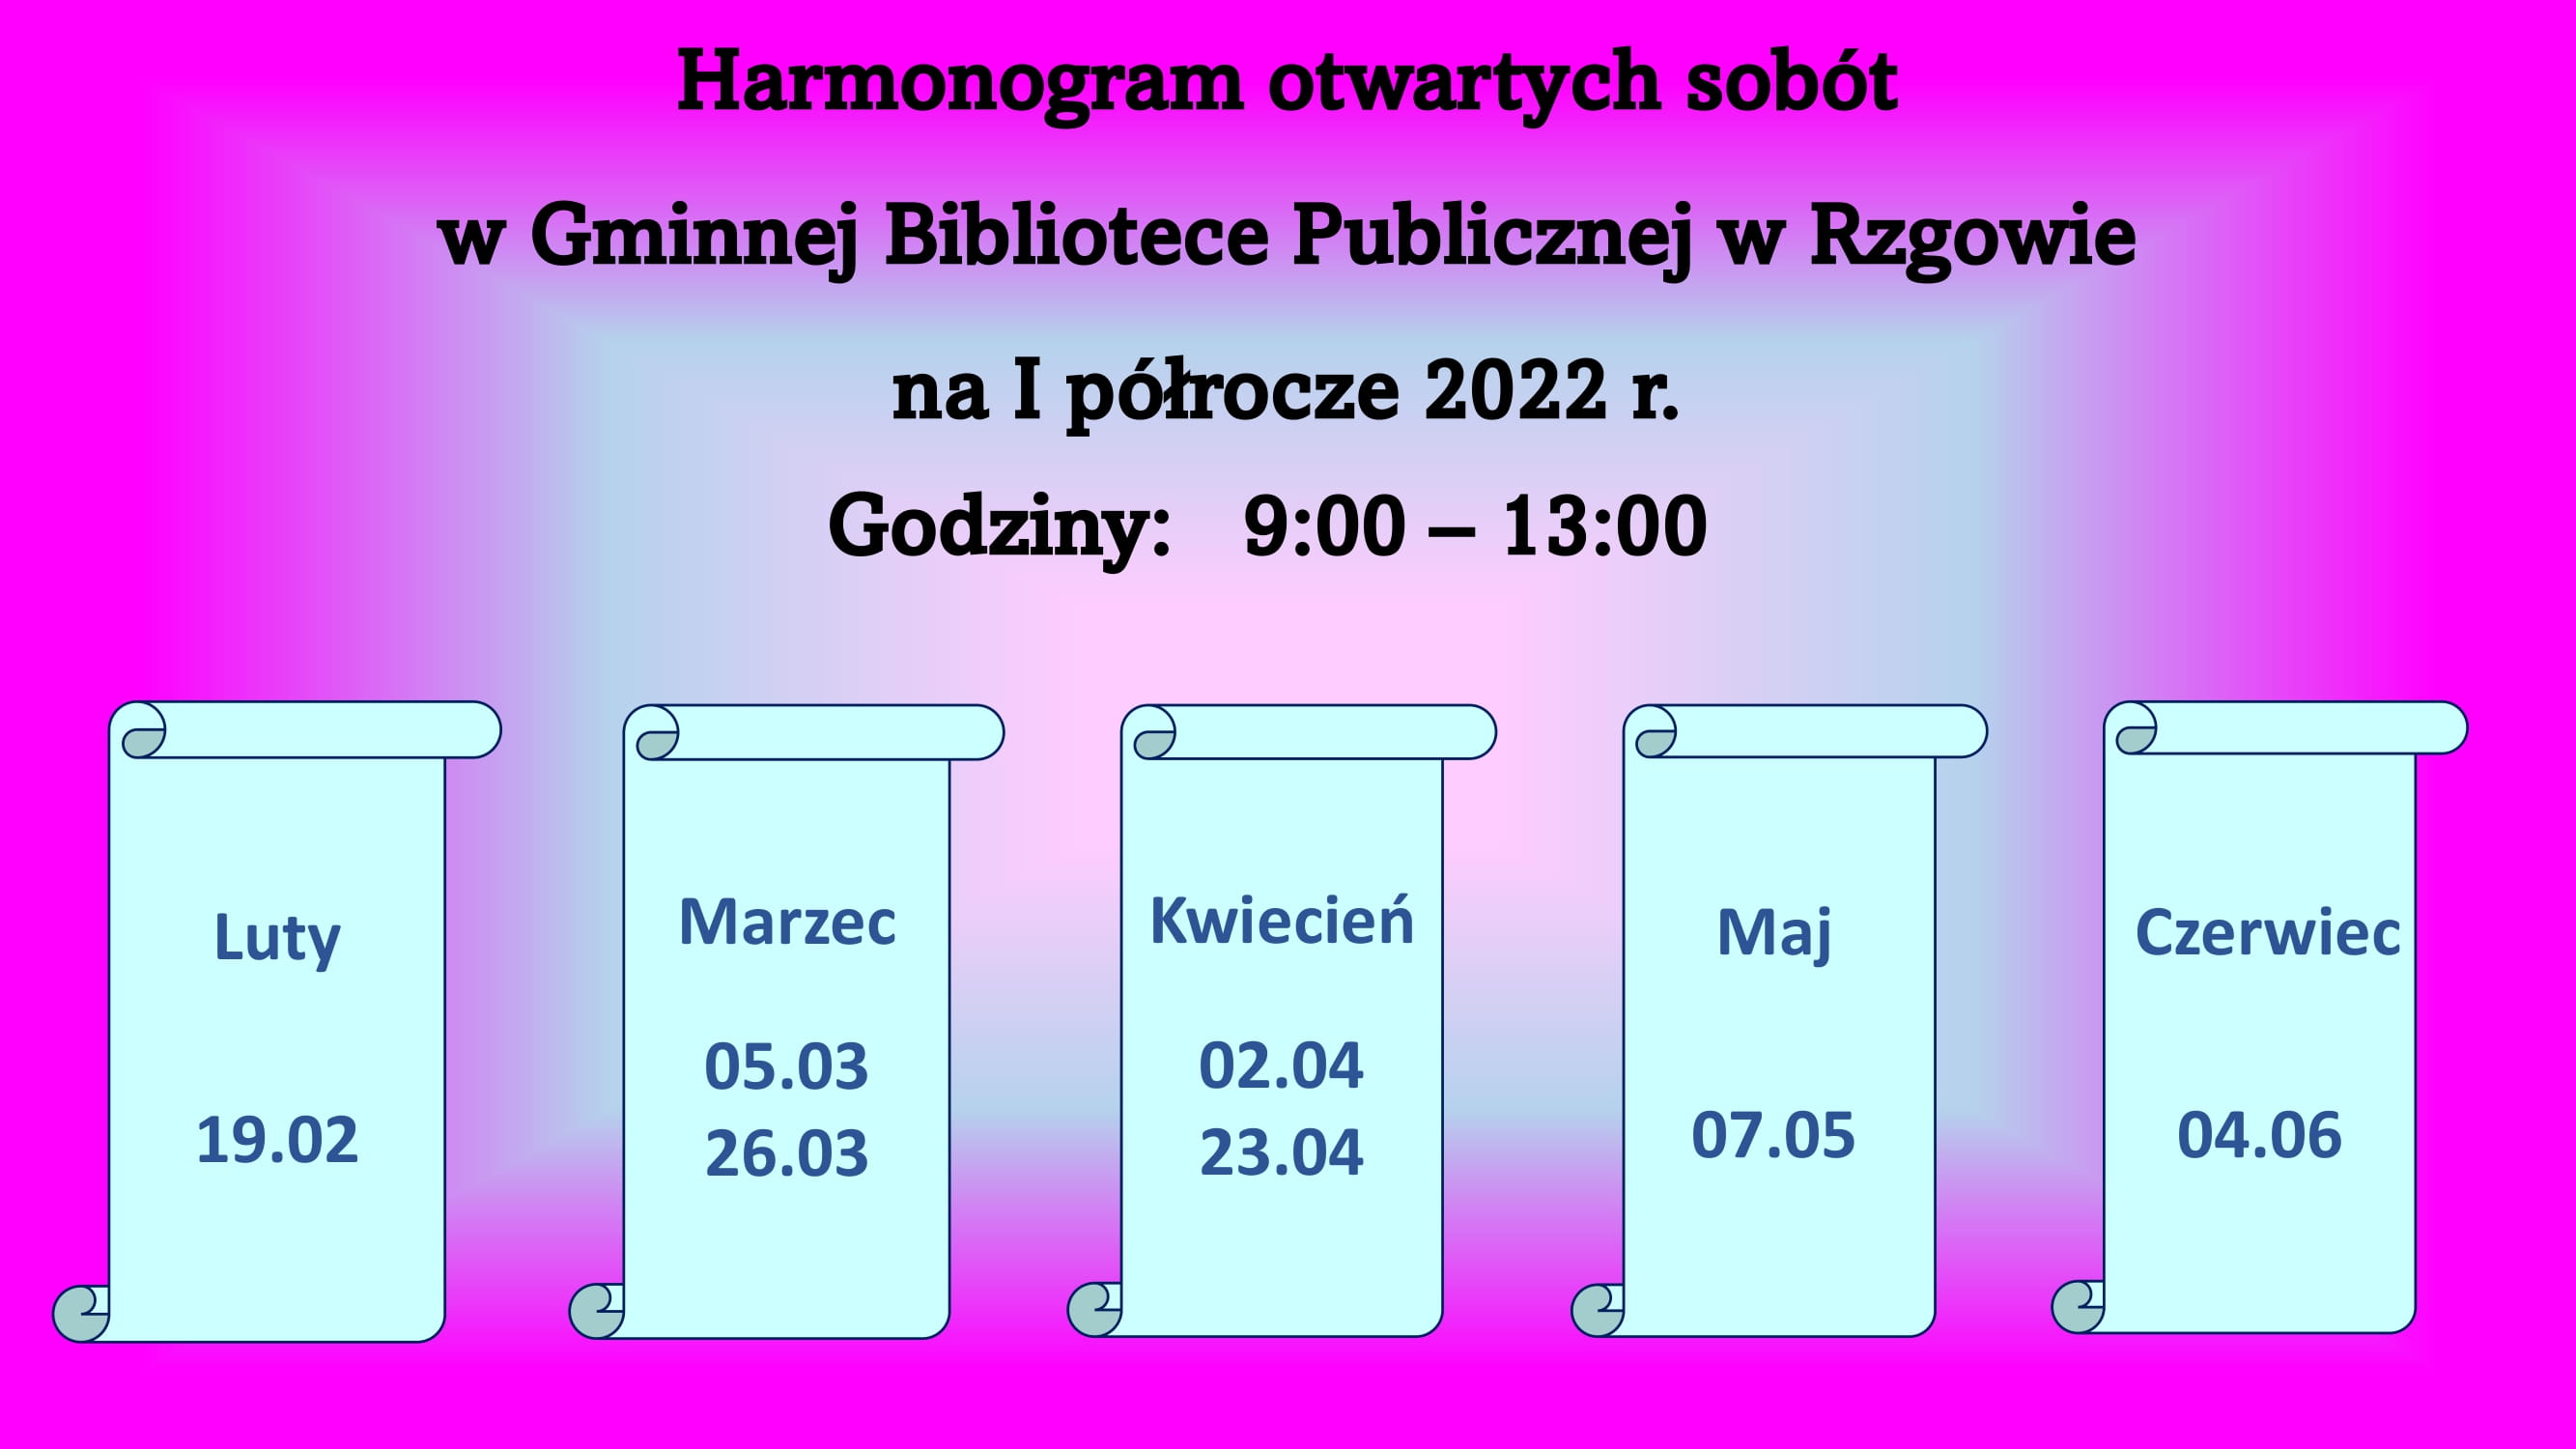 Harmonogram pracy Gminnej Biblioteki Publicznej w Rzgowie